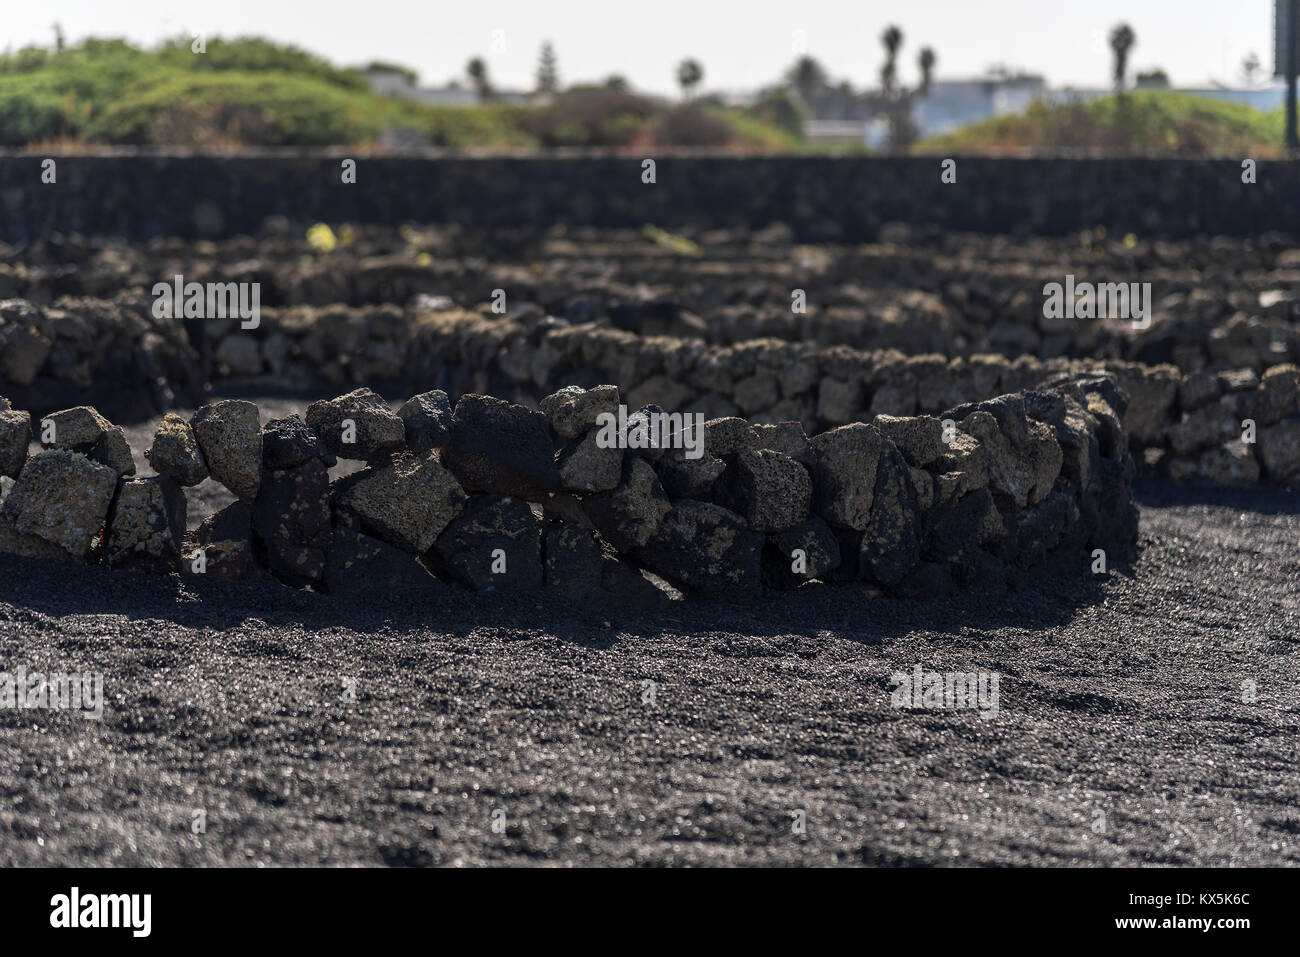 Lavasteinmauern zu Schutz der angebauten Pflanzen vor dem starken viento auf Lanzarote Foto de stock